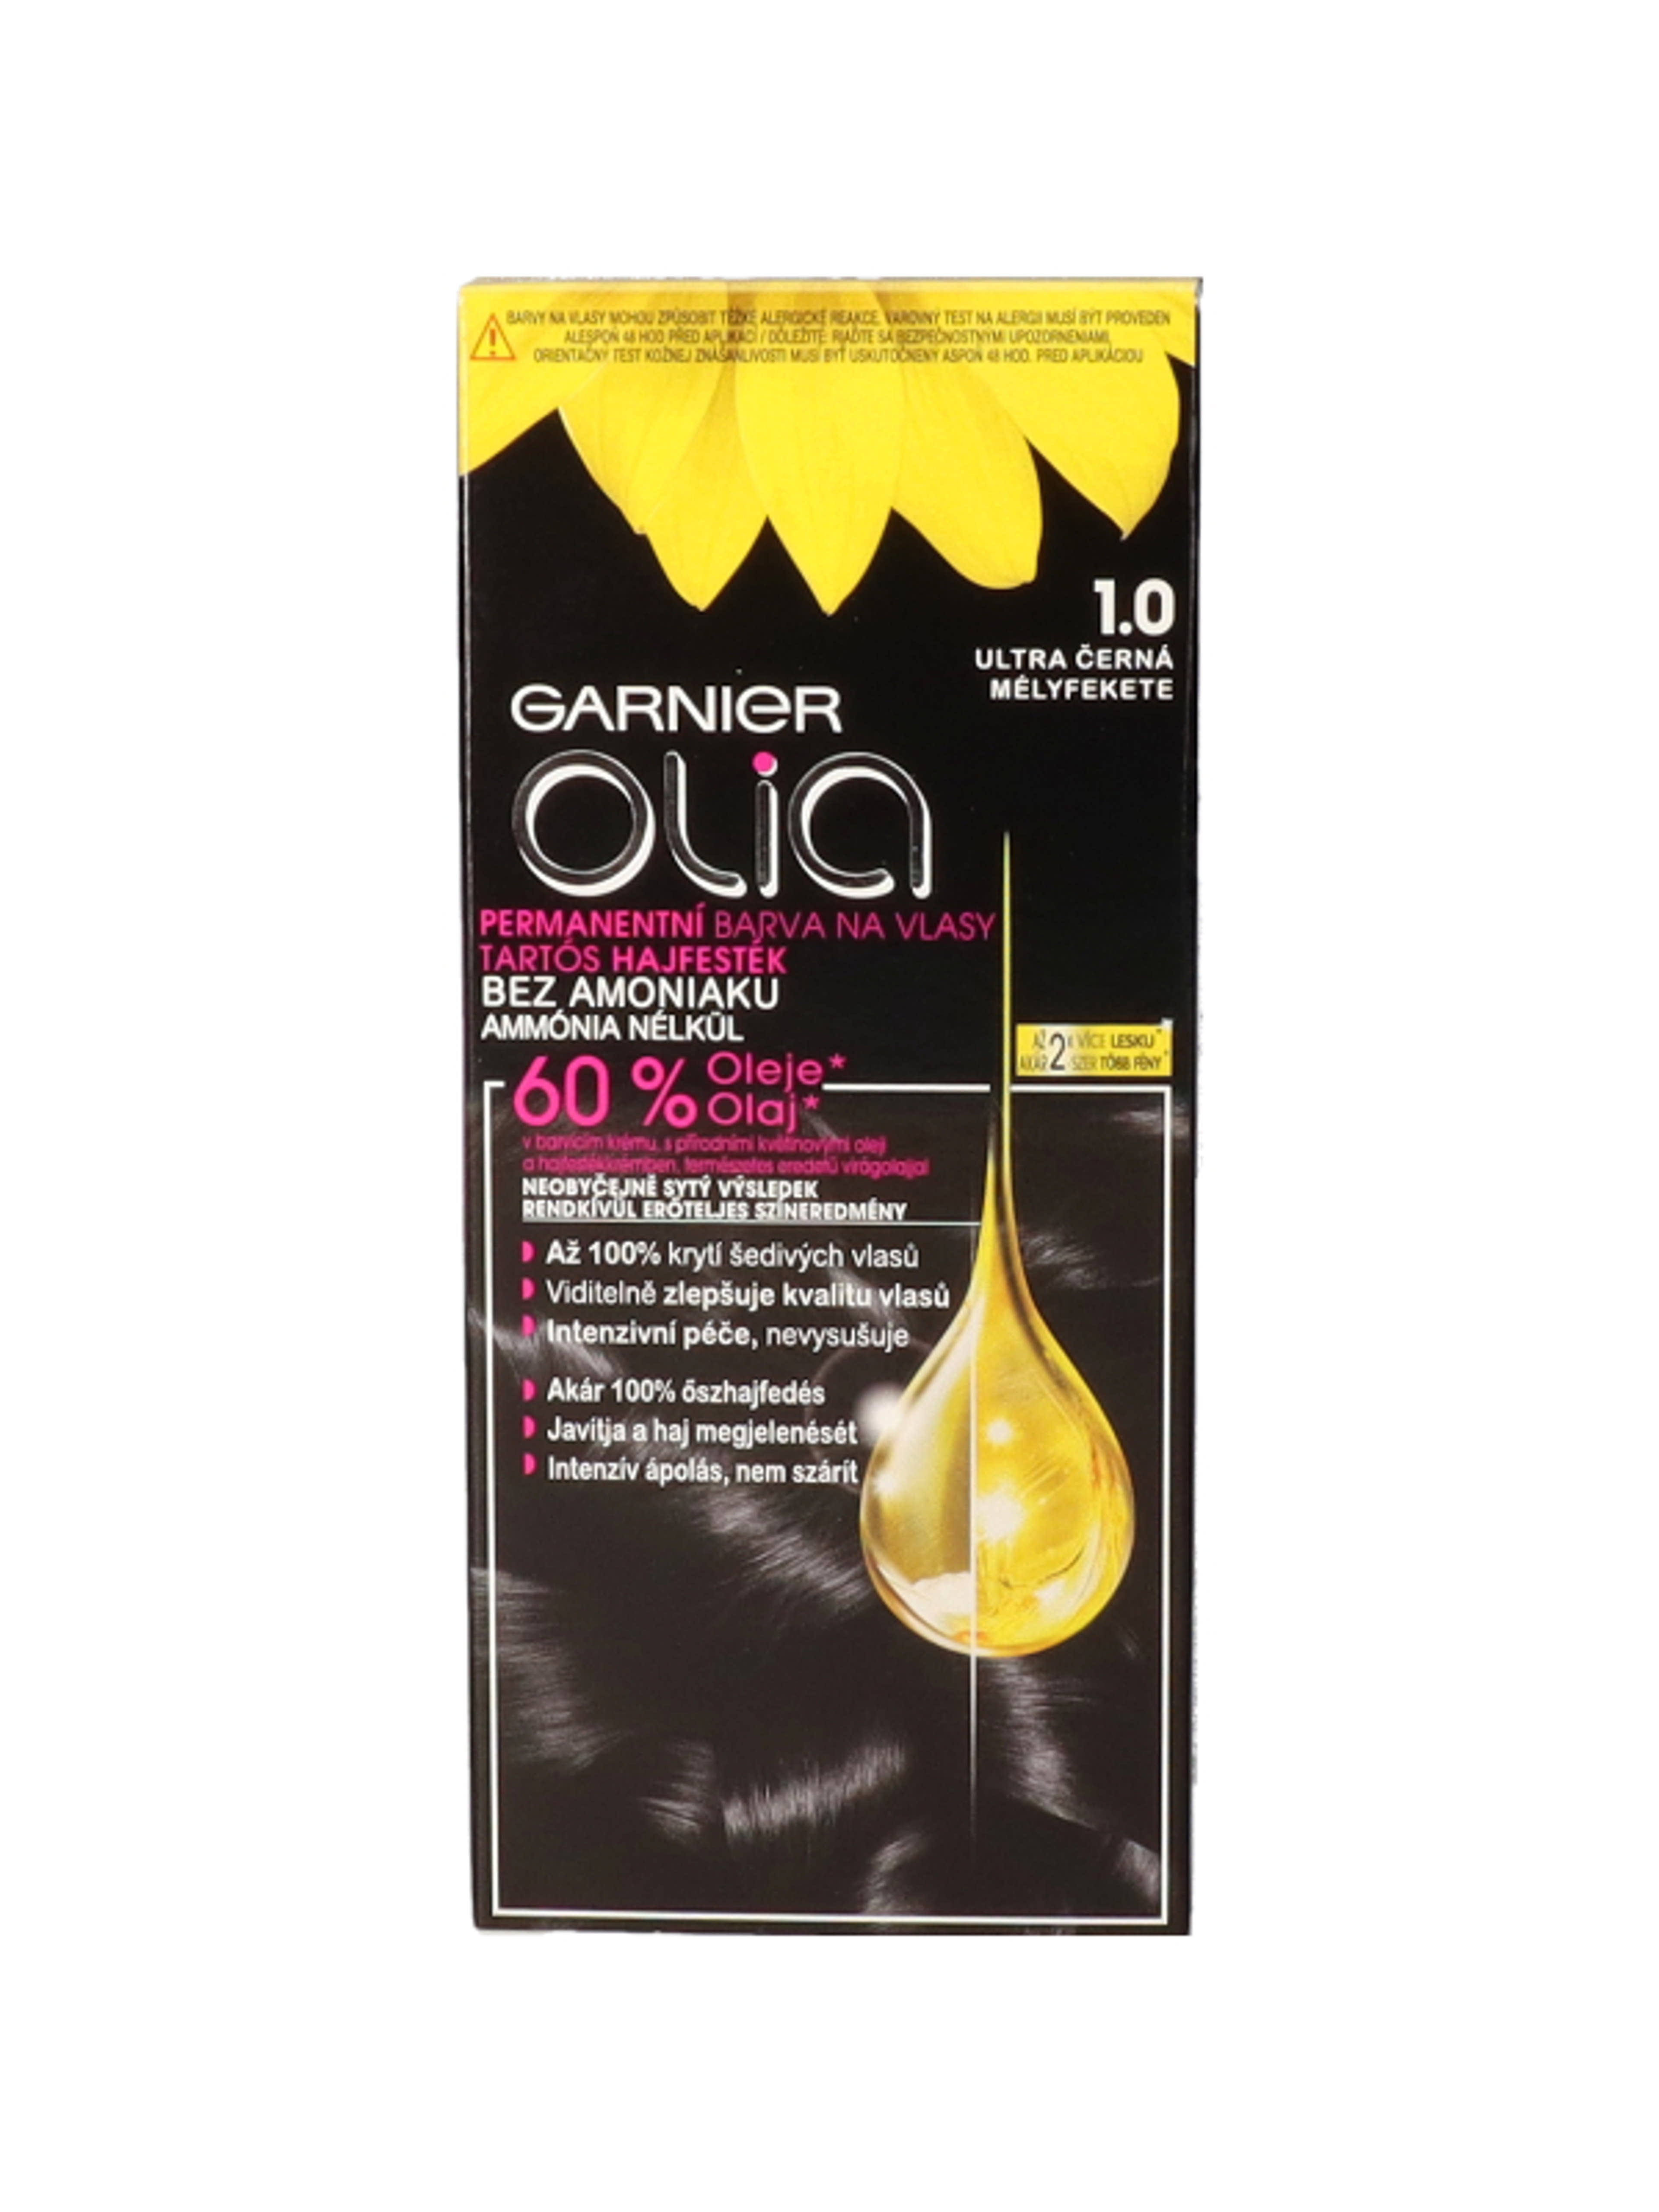 Garnier Olia tartós hajfesték 1.0 Mélyfekete - 1 db